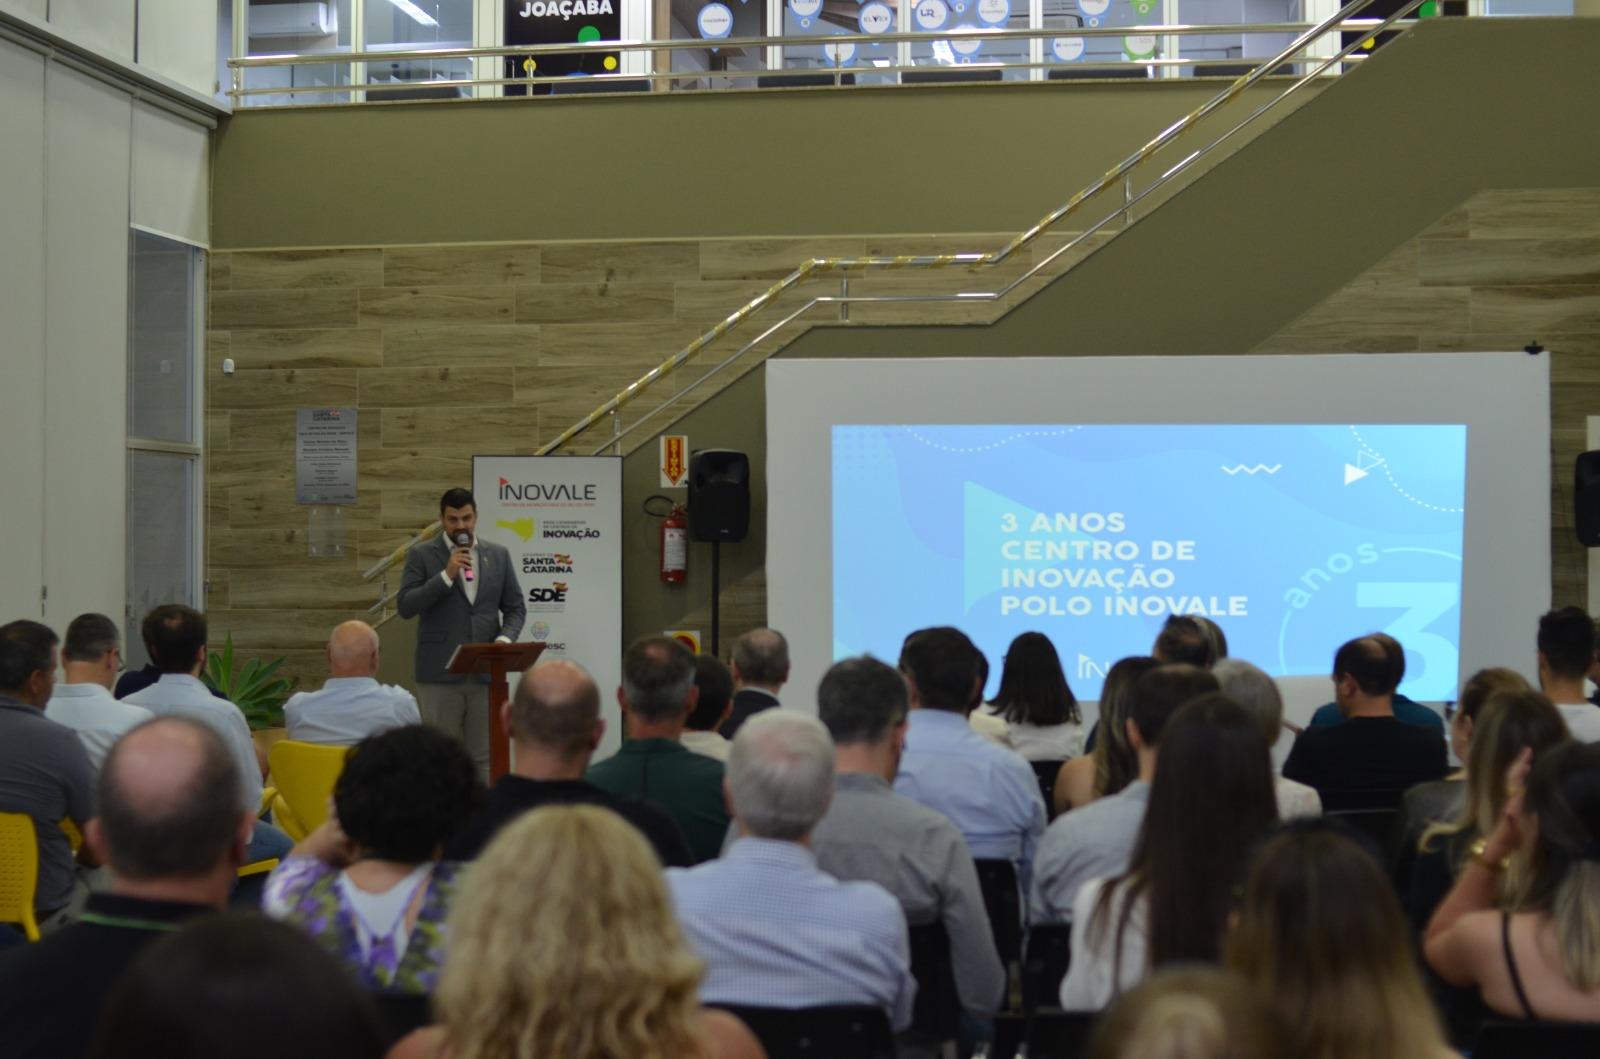 Lançamento do Parque Tecnológico e entrega da Homenagem Bandeira da Inovação marcam comemoração de três anos do Centro de Inovação - Polo Inovale em Joaçaba